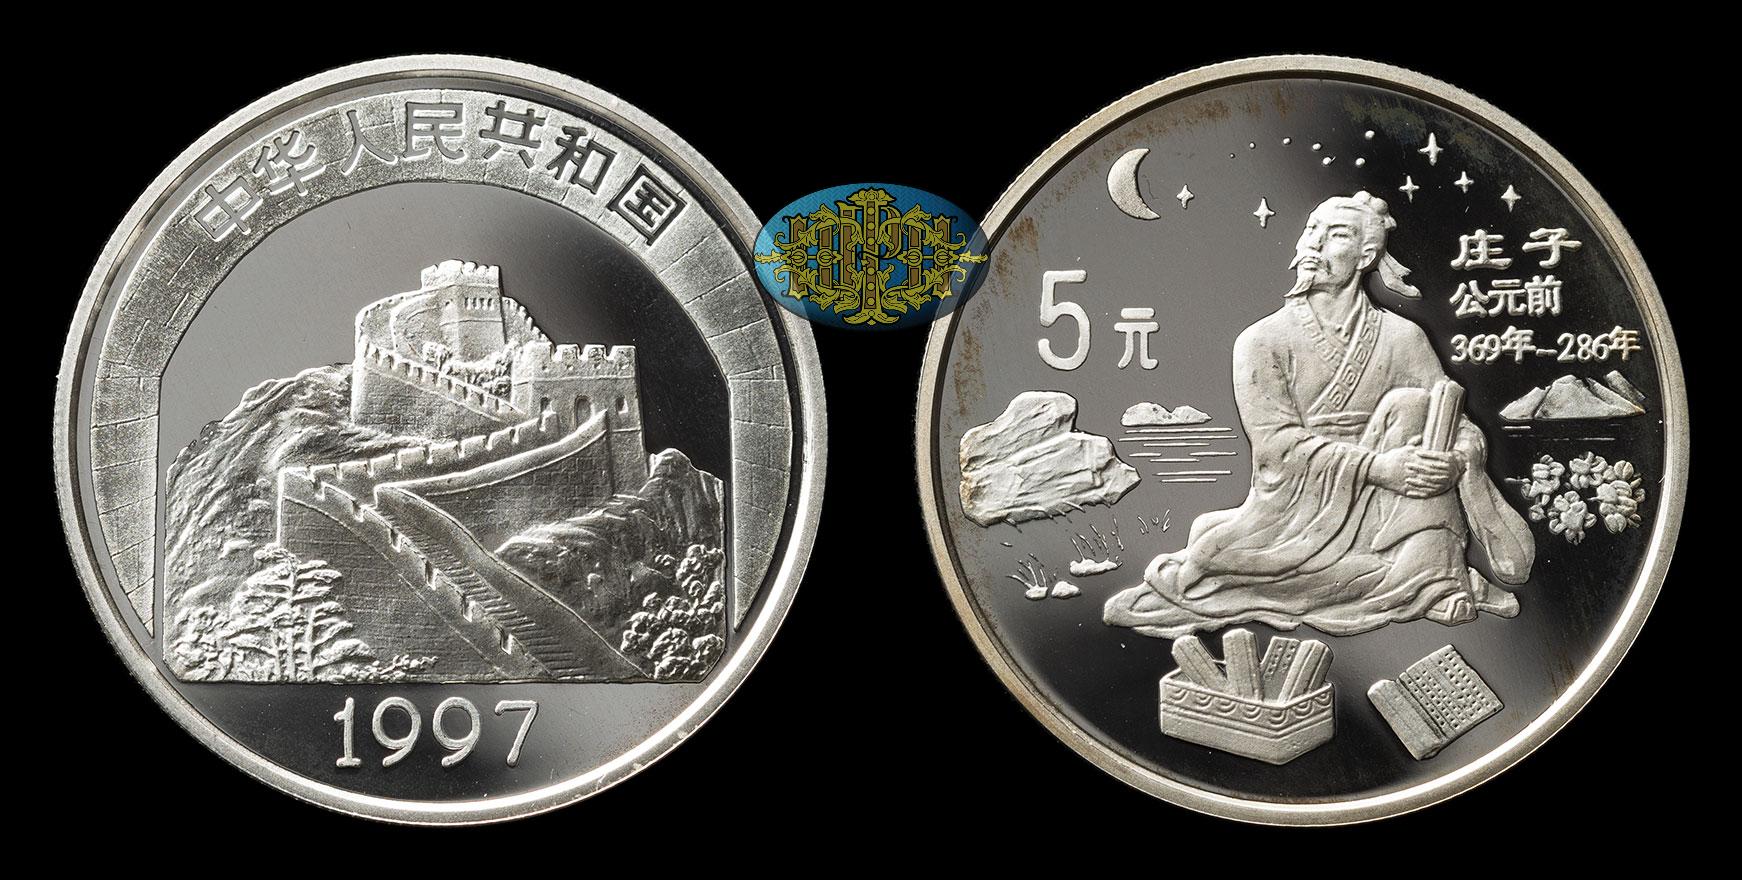 5 Юаней. Монеты Китая 1995. 5 Юаней 1995 Китай серебро китайская культура Император. 5 Юаней 1997 года Китай — китайская культура. 25 юаней в тенге